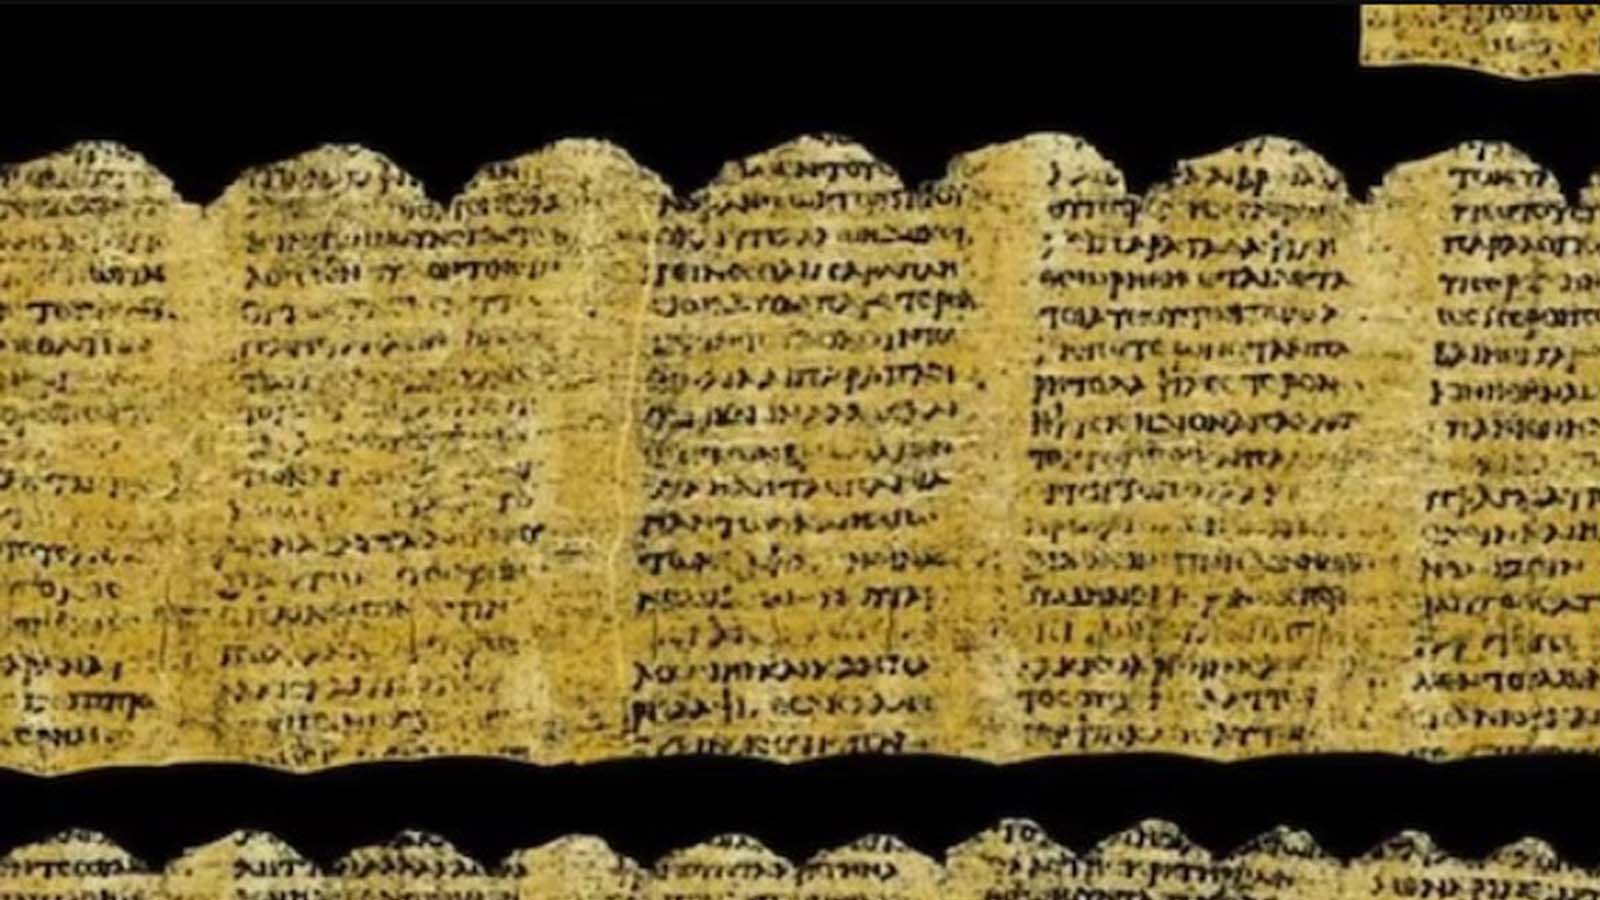 Un viaggio nel cuore della storia con Vesuvius Challenge, svelando antichi manoscritti grazie all'intelligenza artificiale